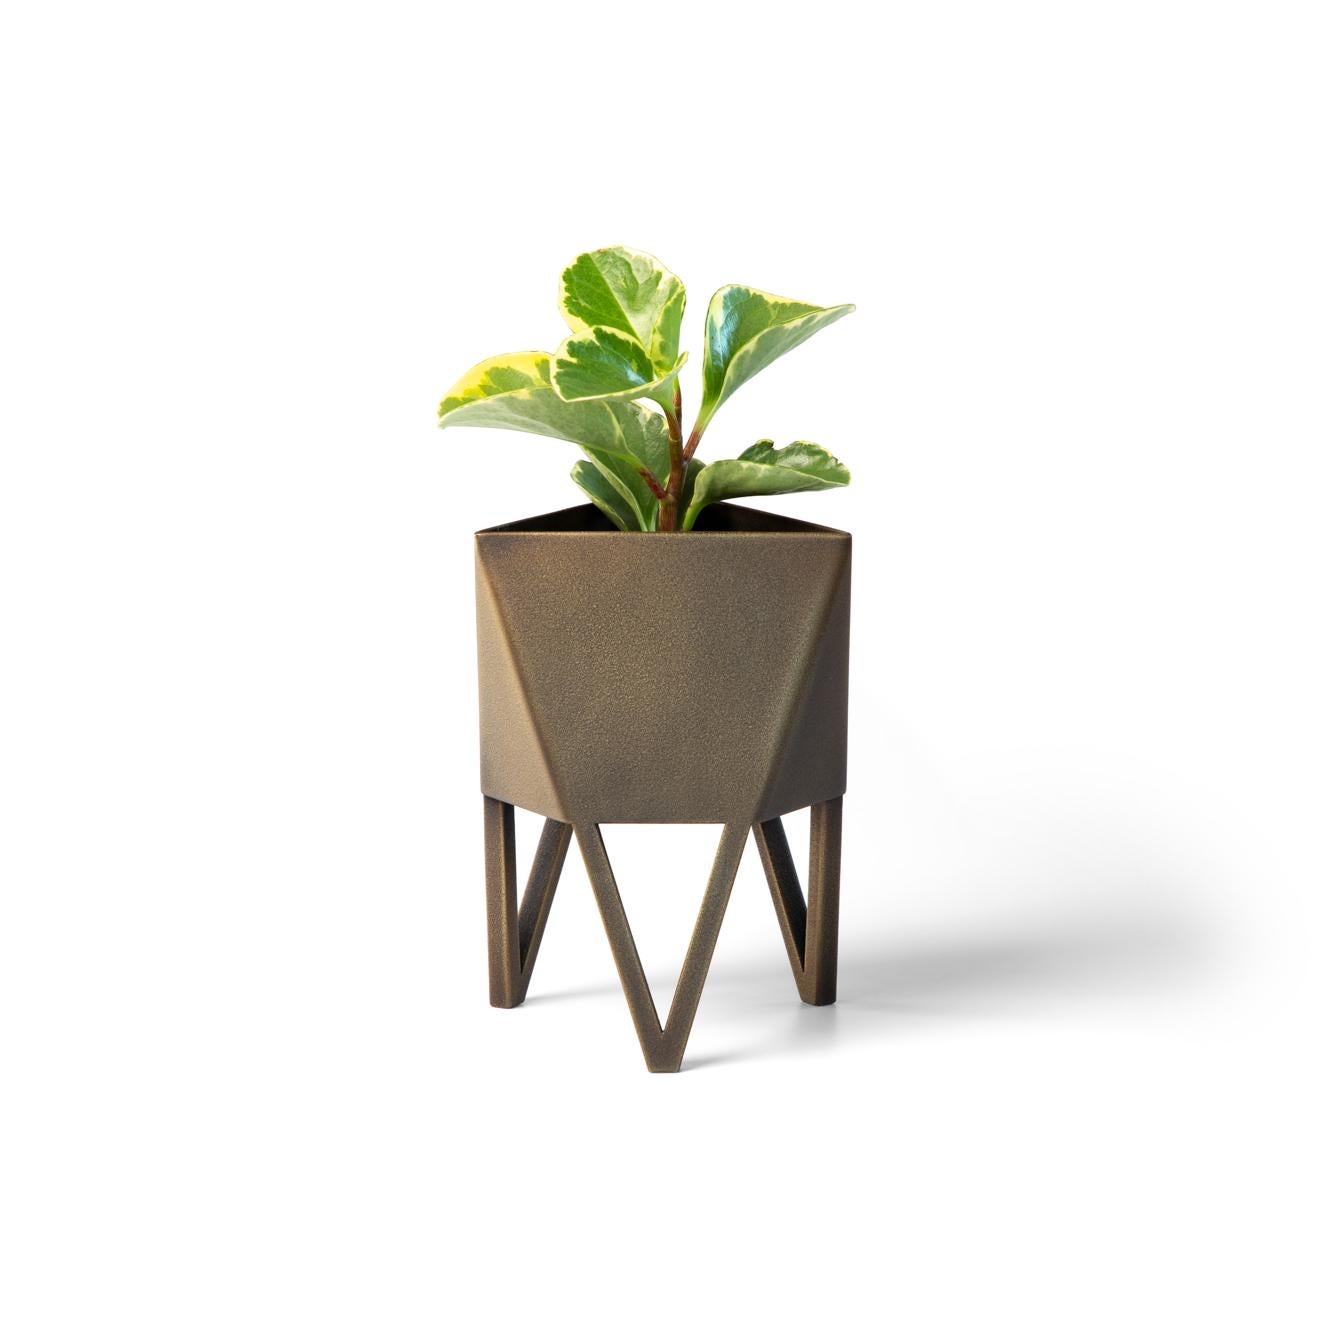 Mini Deca Planter, Pastel Green, Steel, Indoor/Outdoor, Geometric, Force/Collide 8